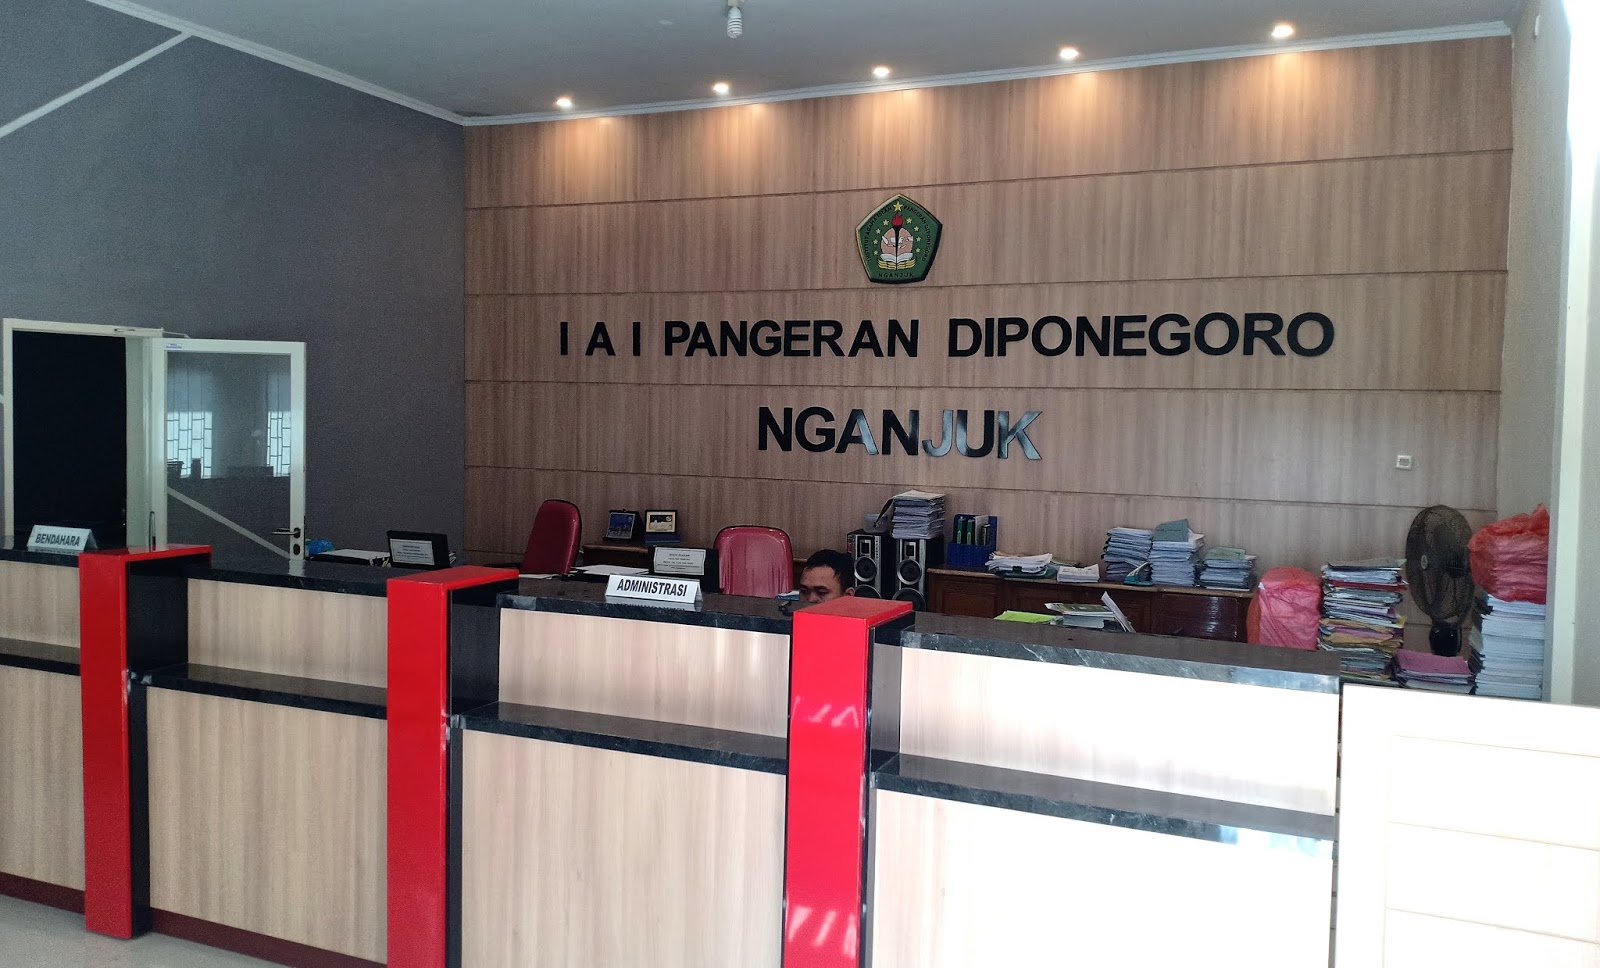 Ruang Pelayanan IAI Pangeran Diponegoro Nganjuk